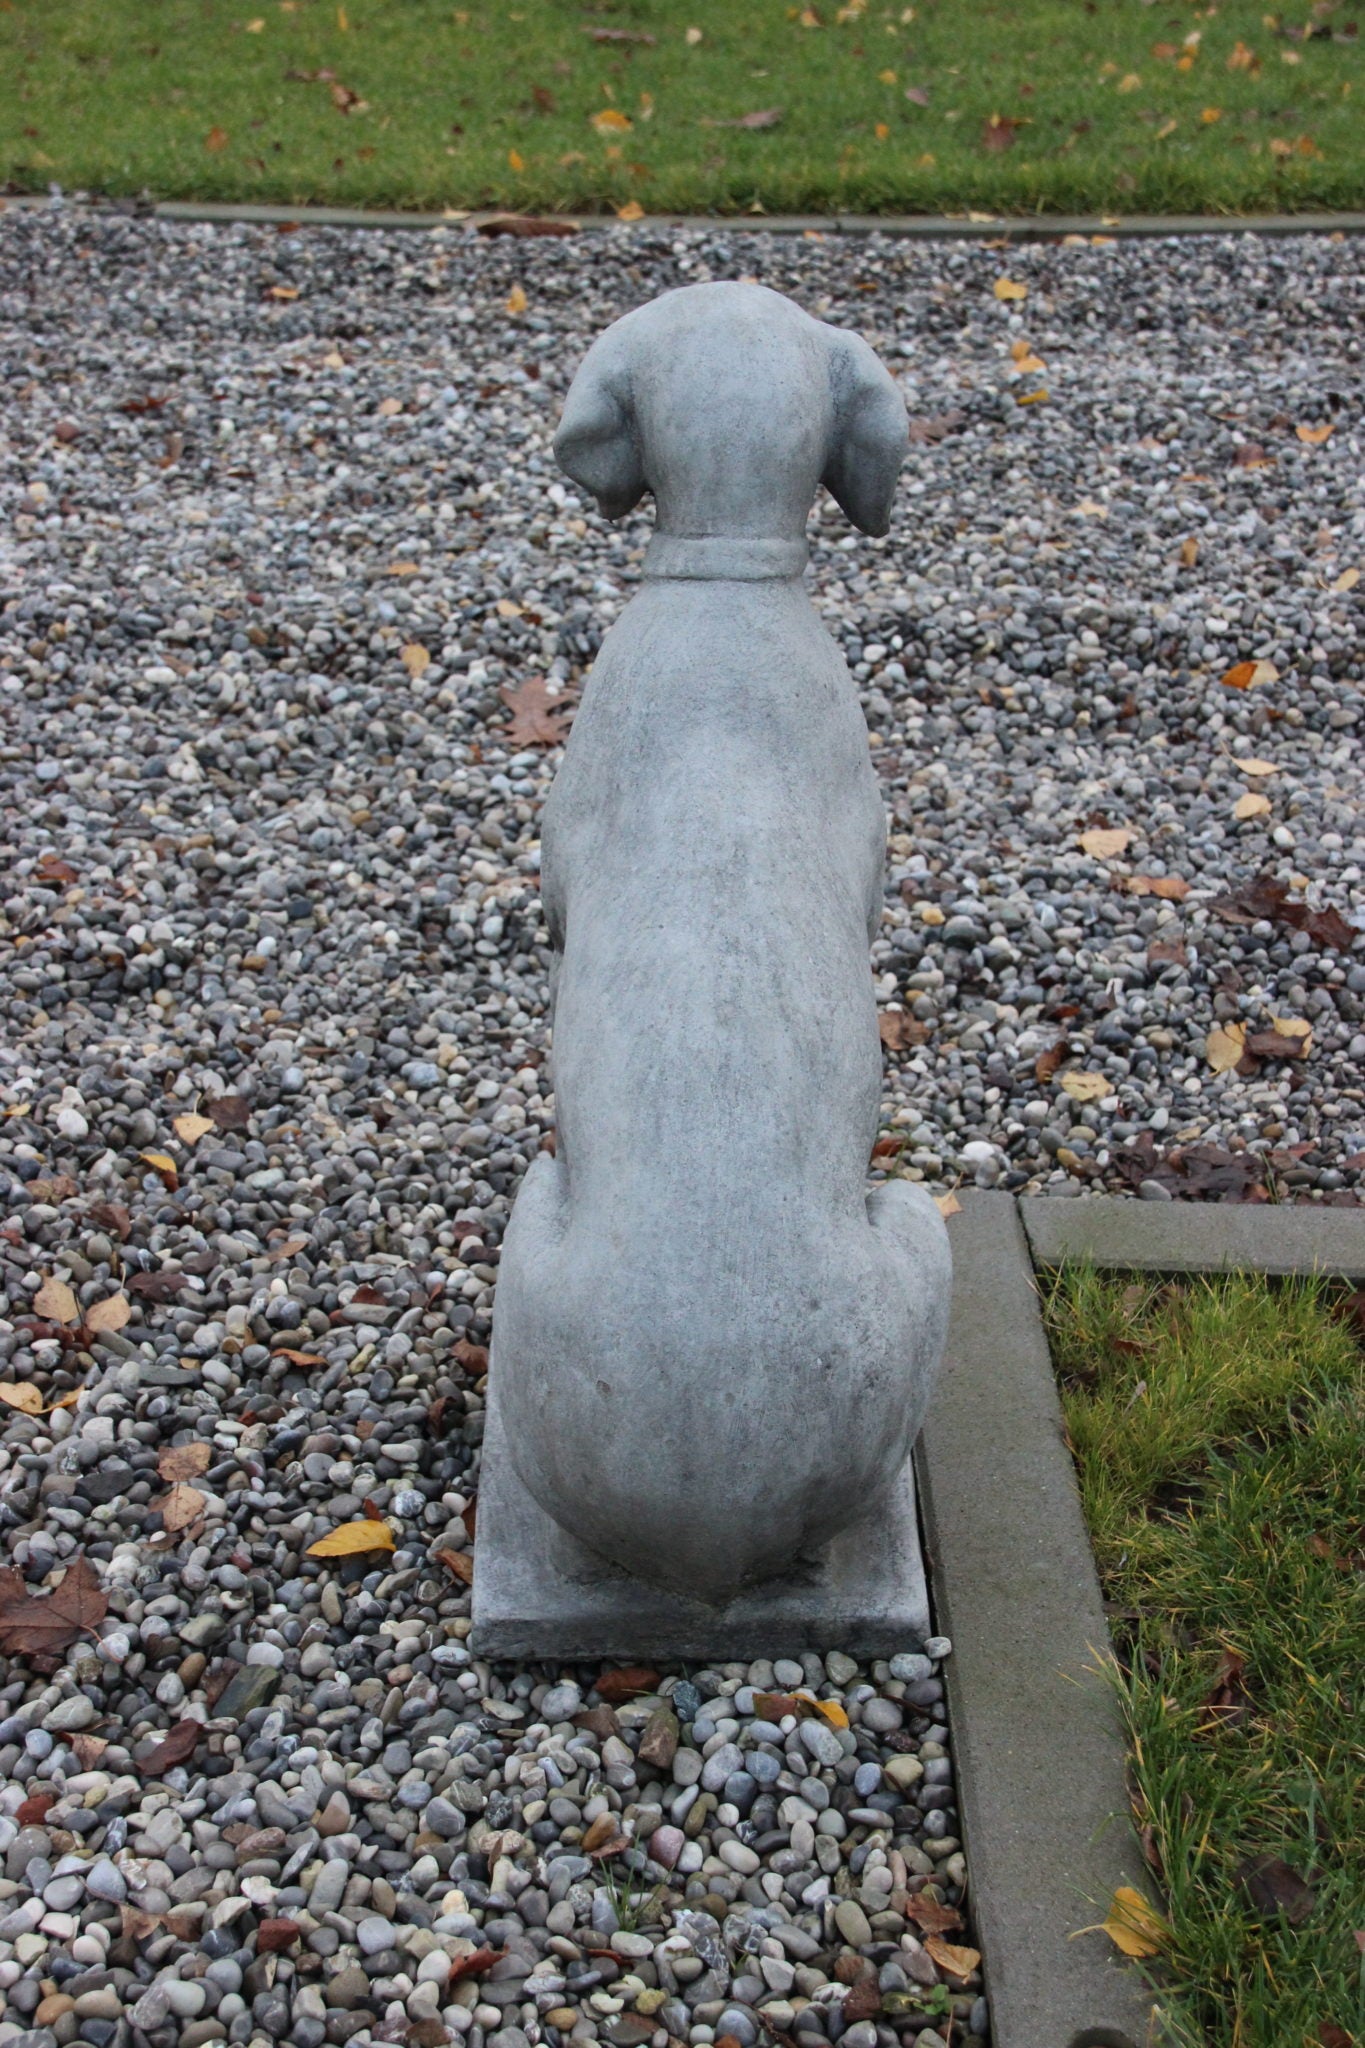 Garden statue of sitting dog